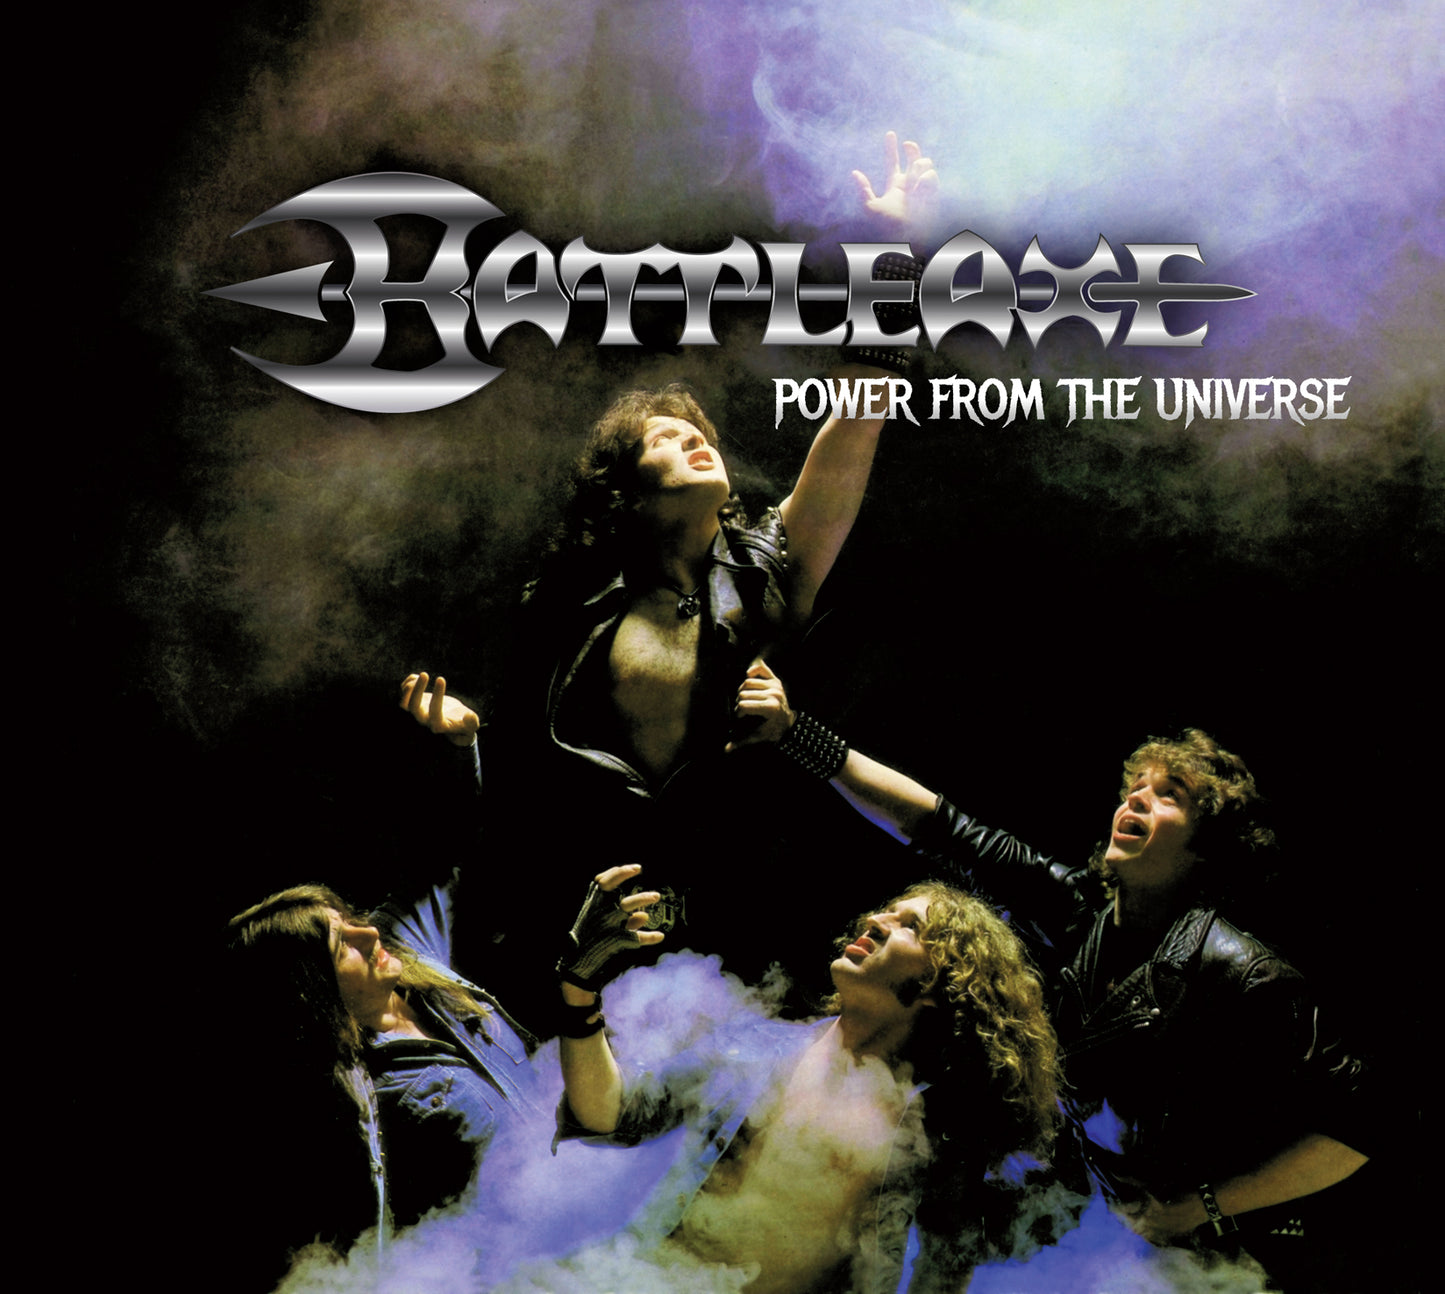 Battleaxe "Power From The Universe" LP